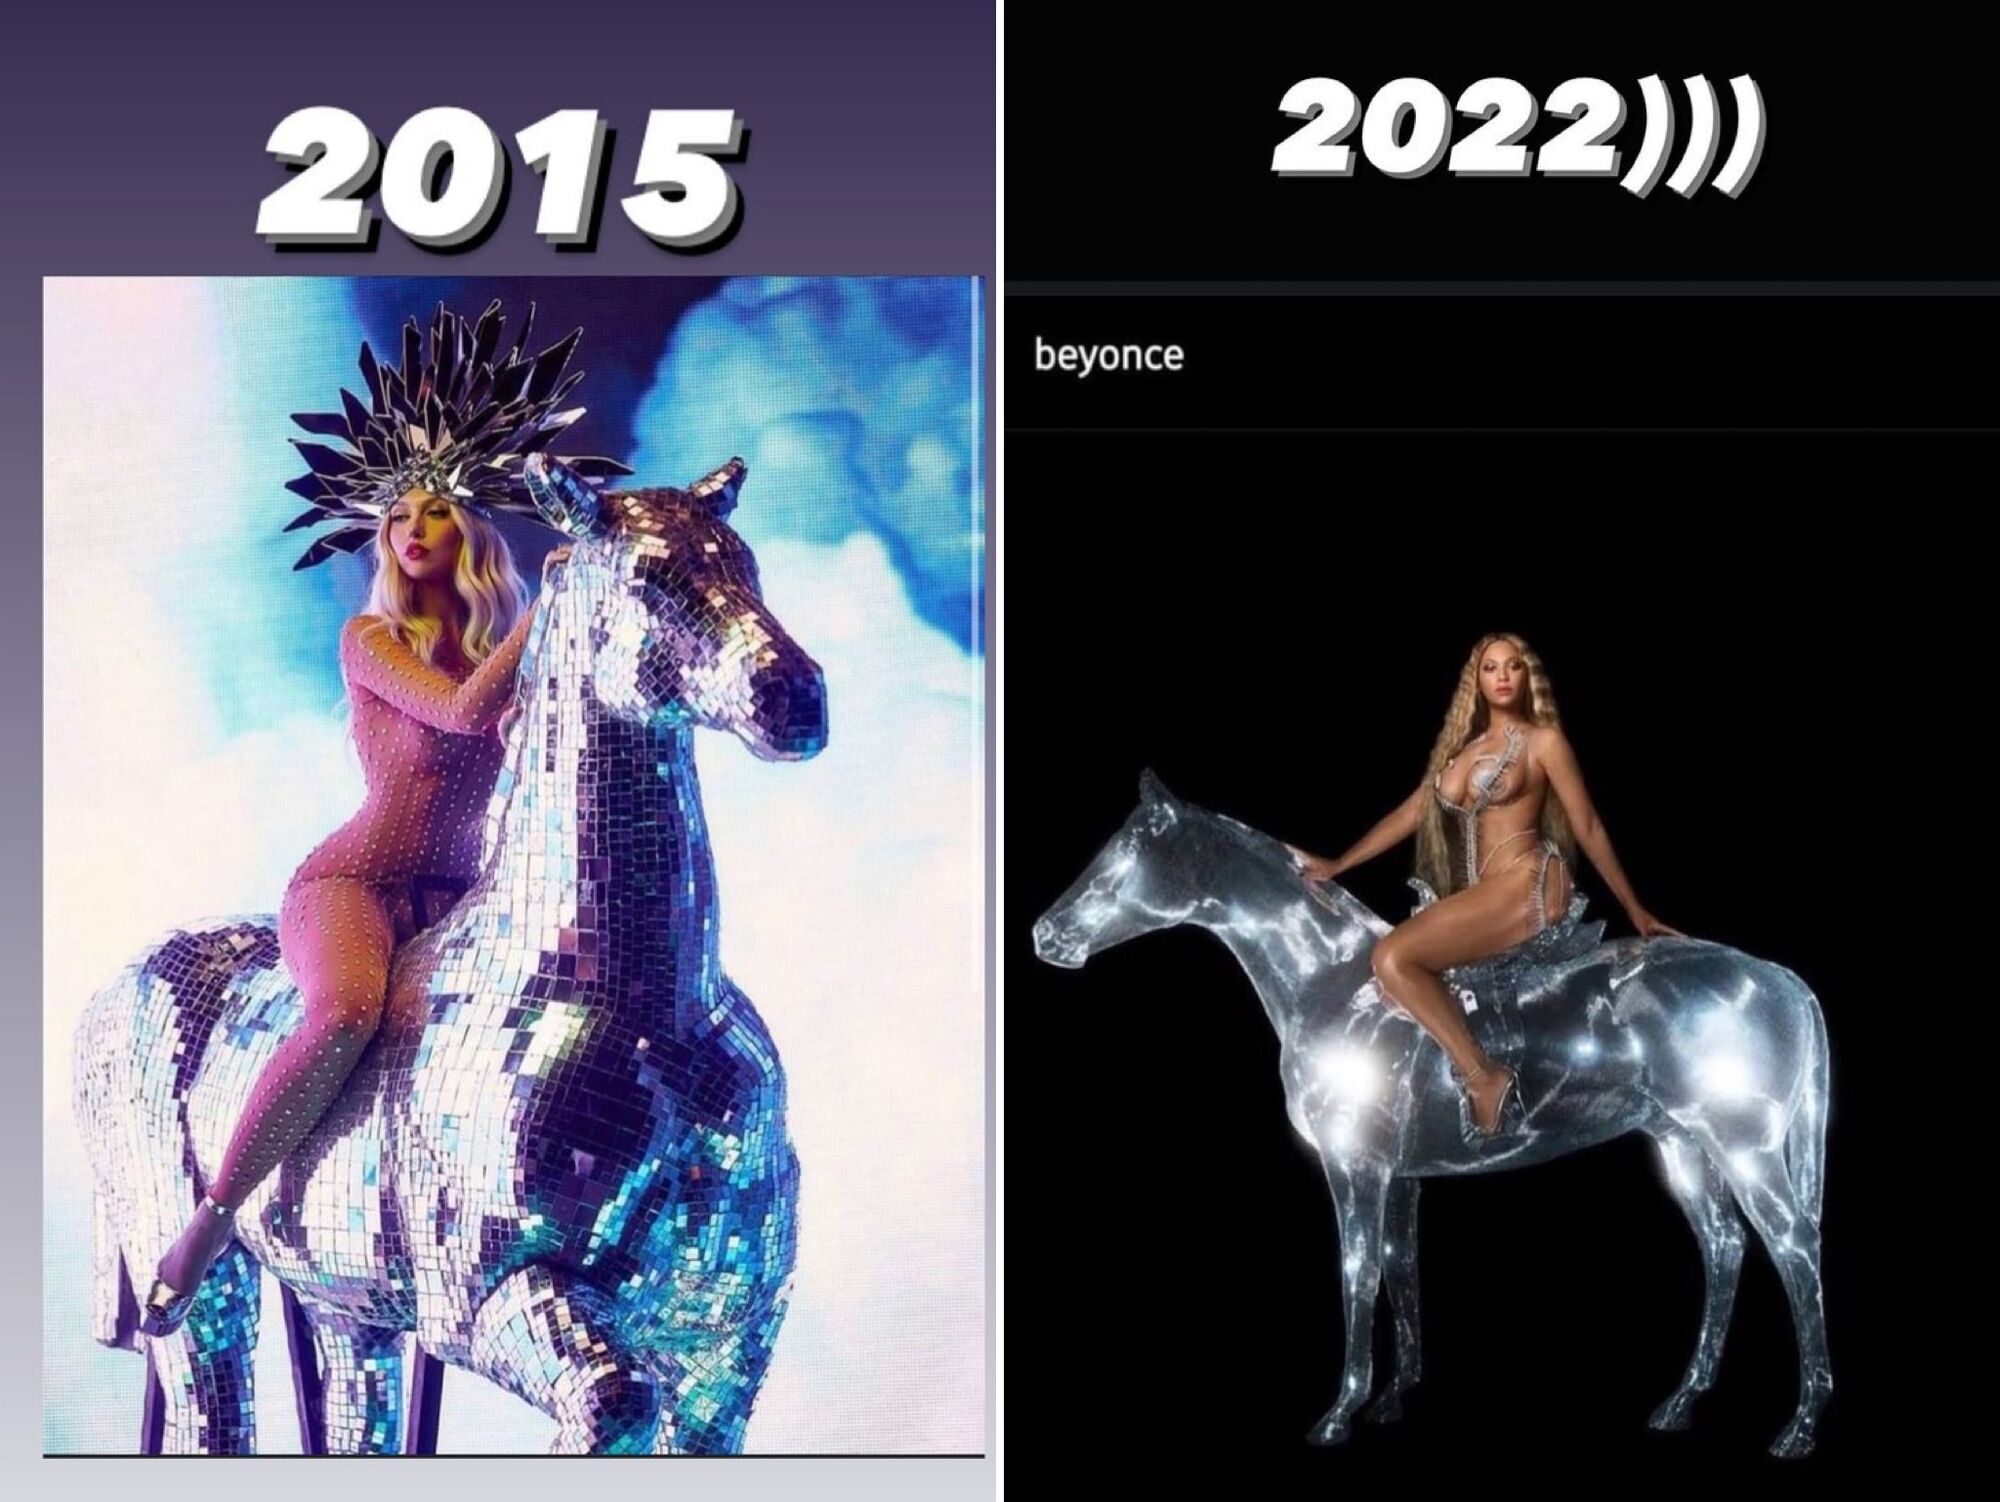 Напівгола Бейонсе на коні повторила образ Полякової 2015 року. Фотопорівняння